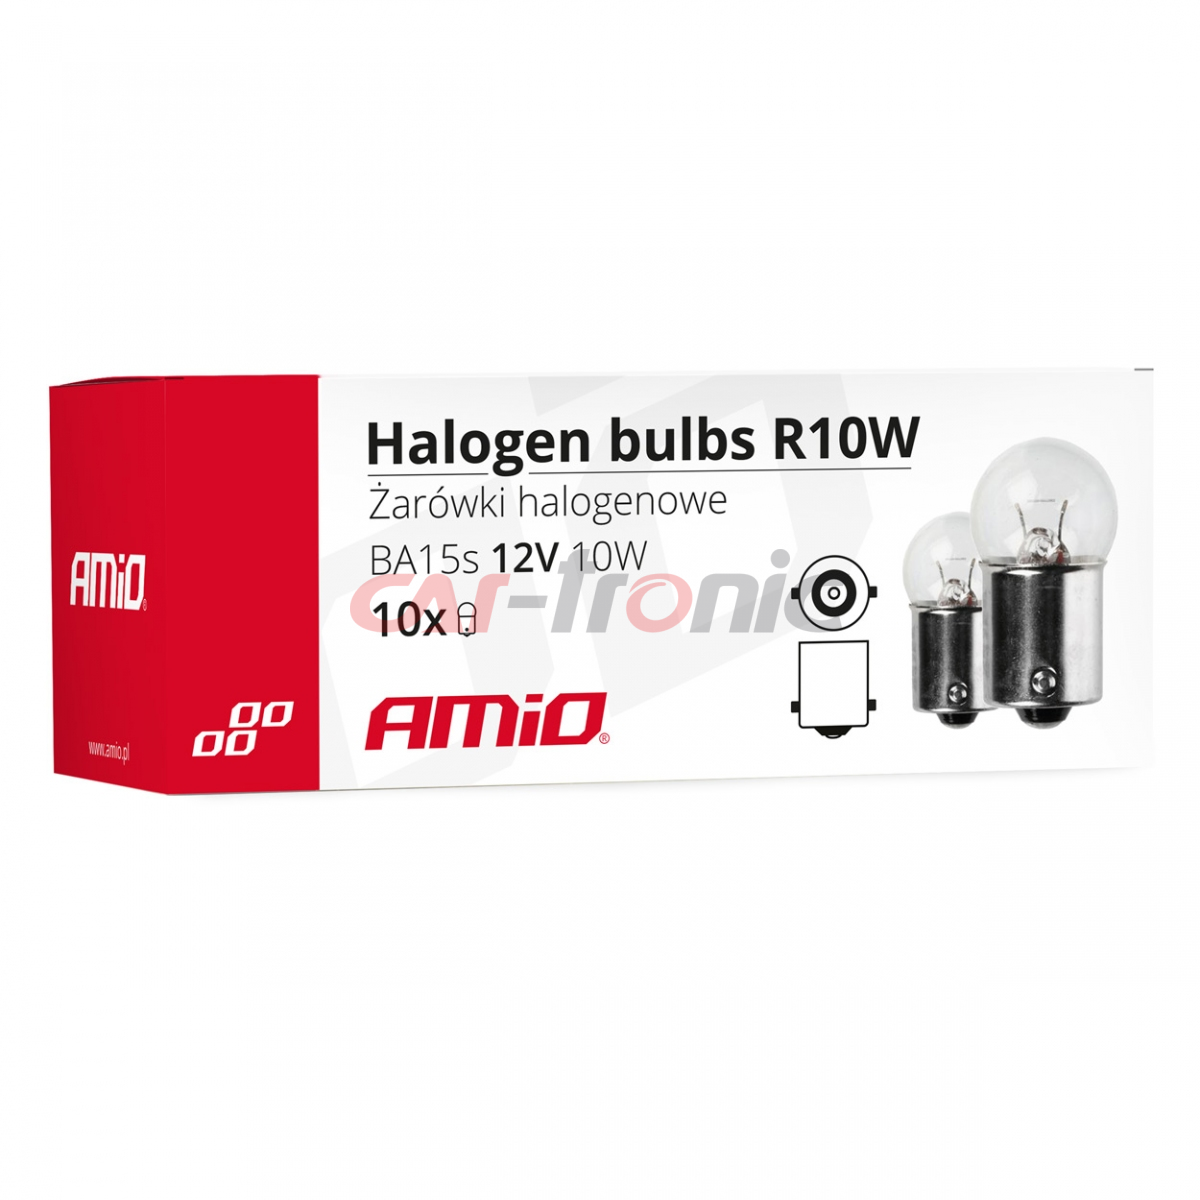 Żarówki halogenowe R10W BA15s 12V 10W 10 szt. AMIO-01487